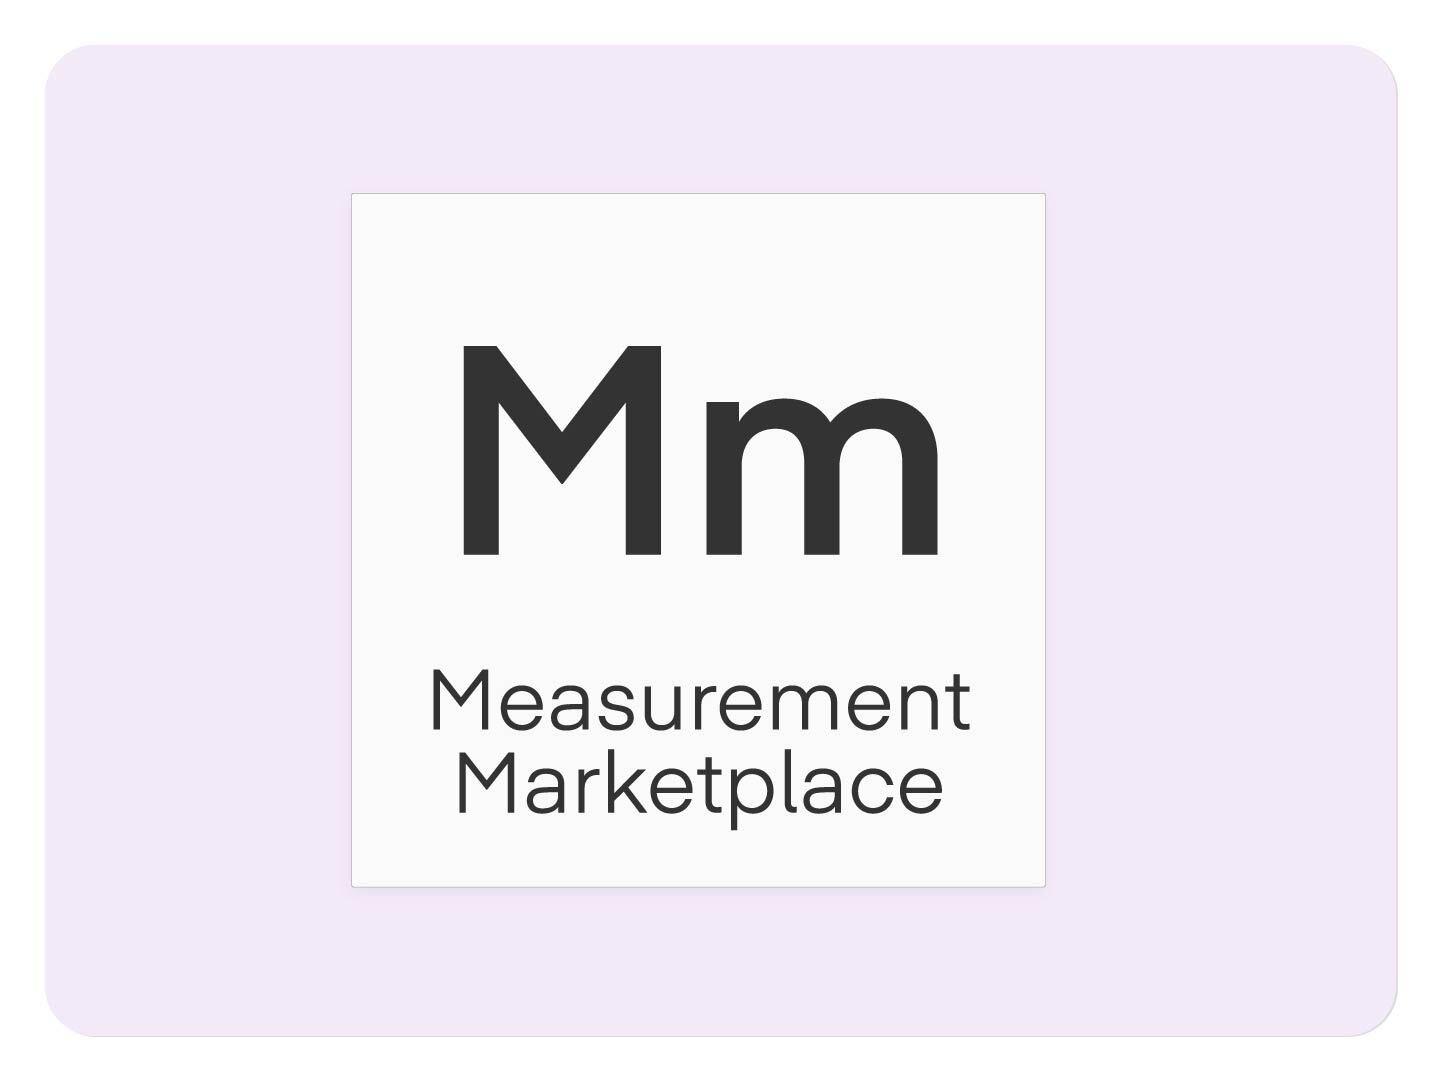 Mm - Measurement Marketplace